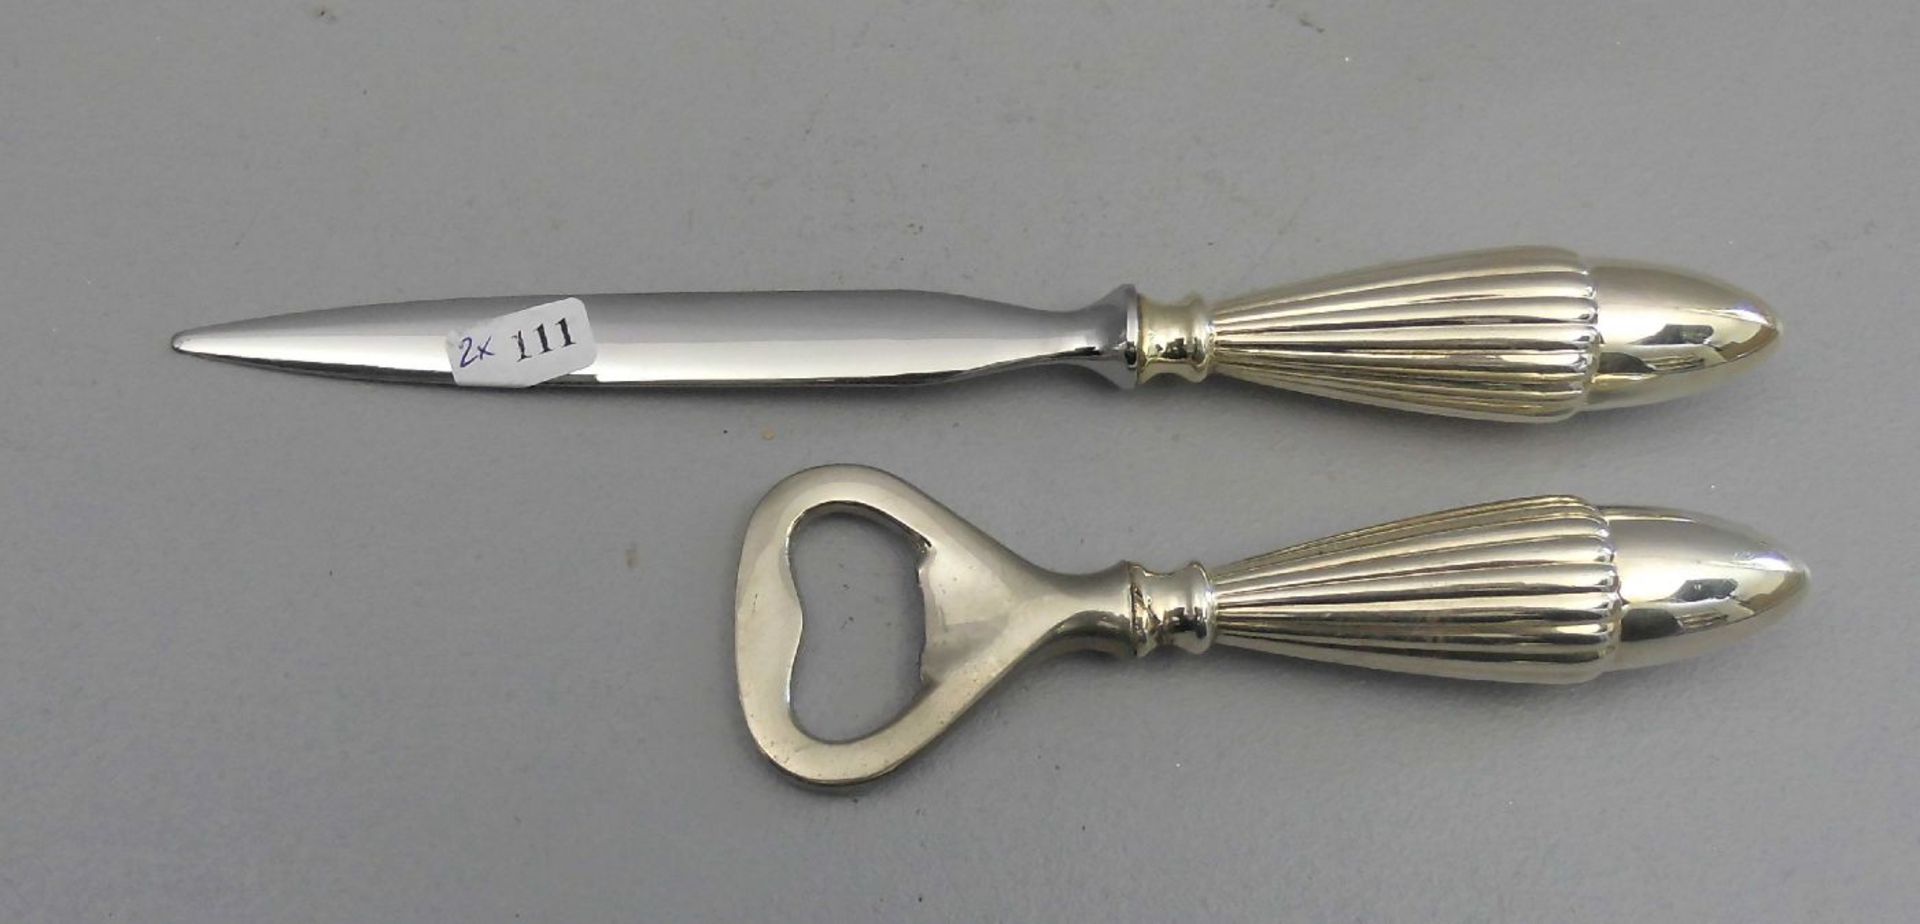 BRIEFÖFFNER UND FLASCHENÖFFNER / paperknife and bottle opener, deutsch, 835er Silber (insg. 109